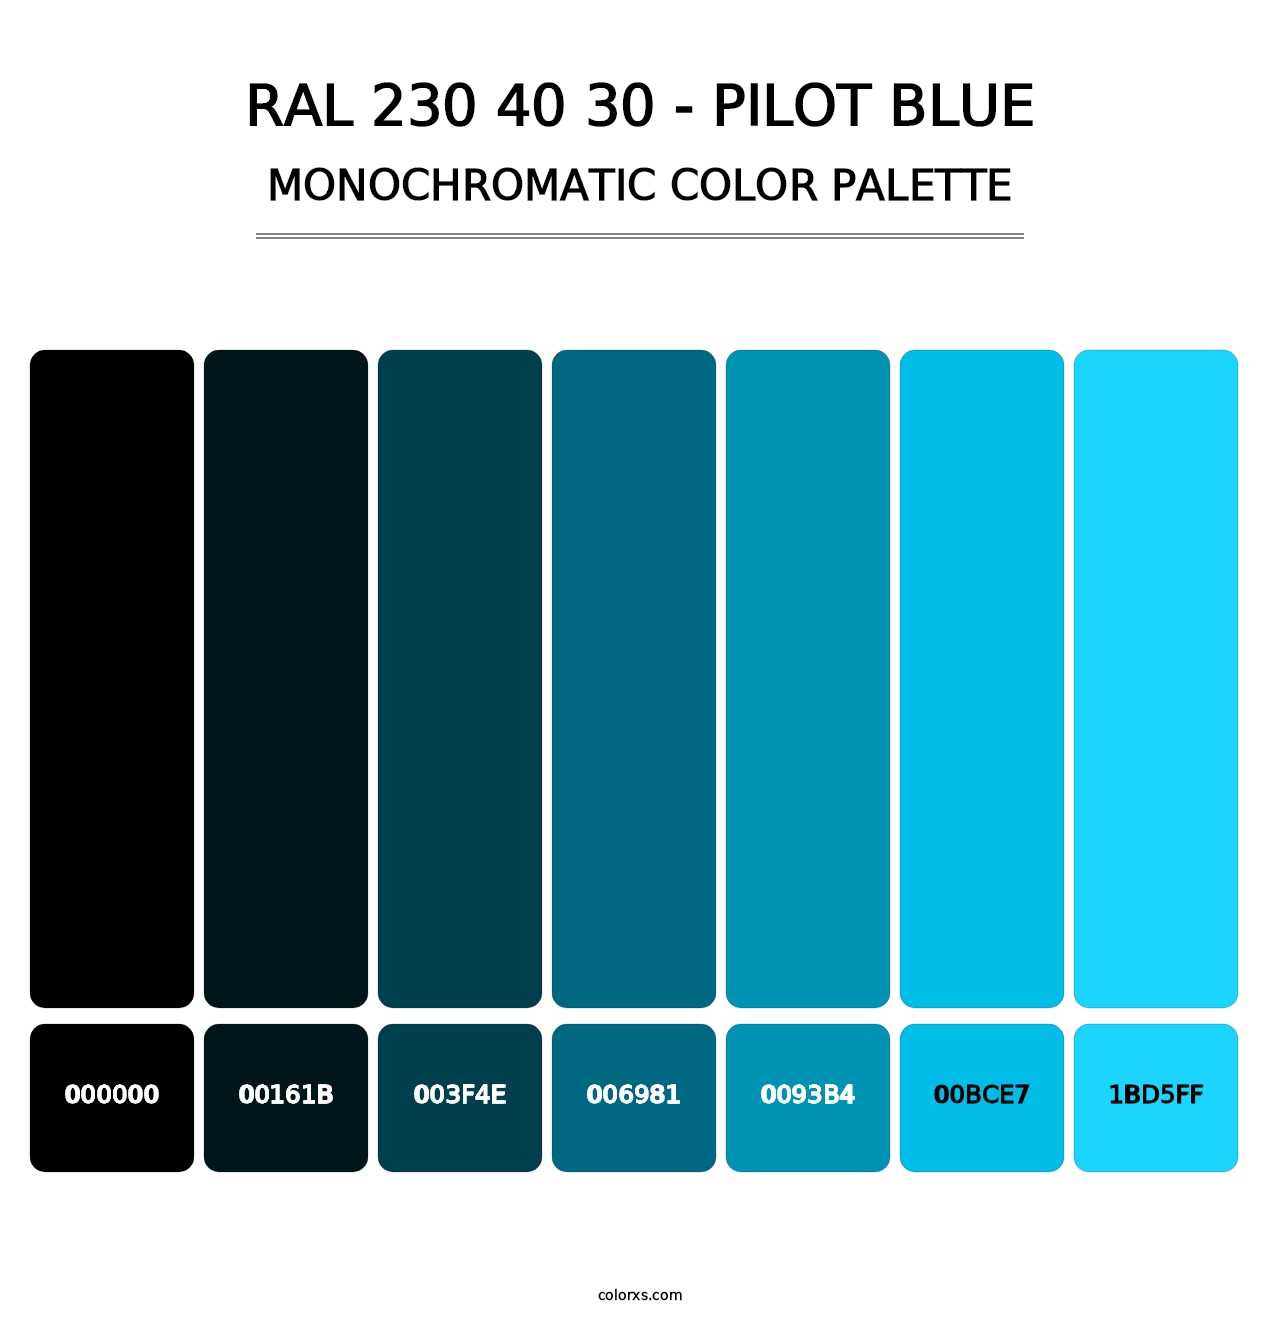 RAL 230 40 30 - Pilot Blue - Monochromatic Color Palette